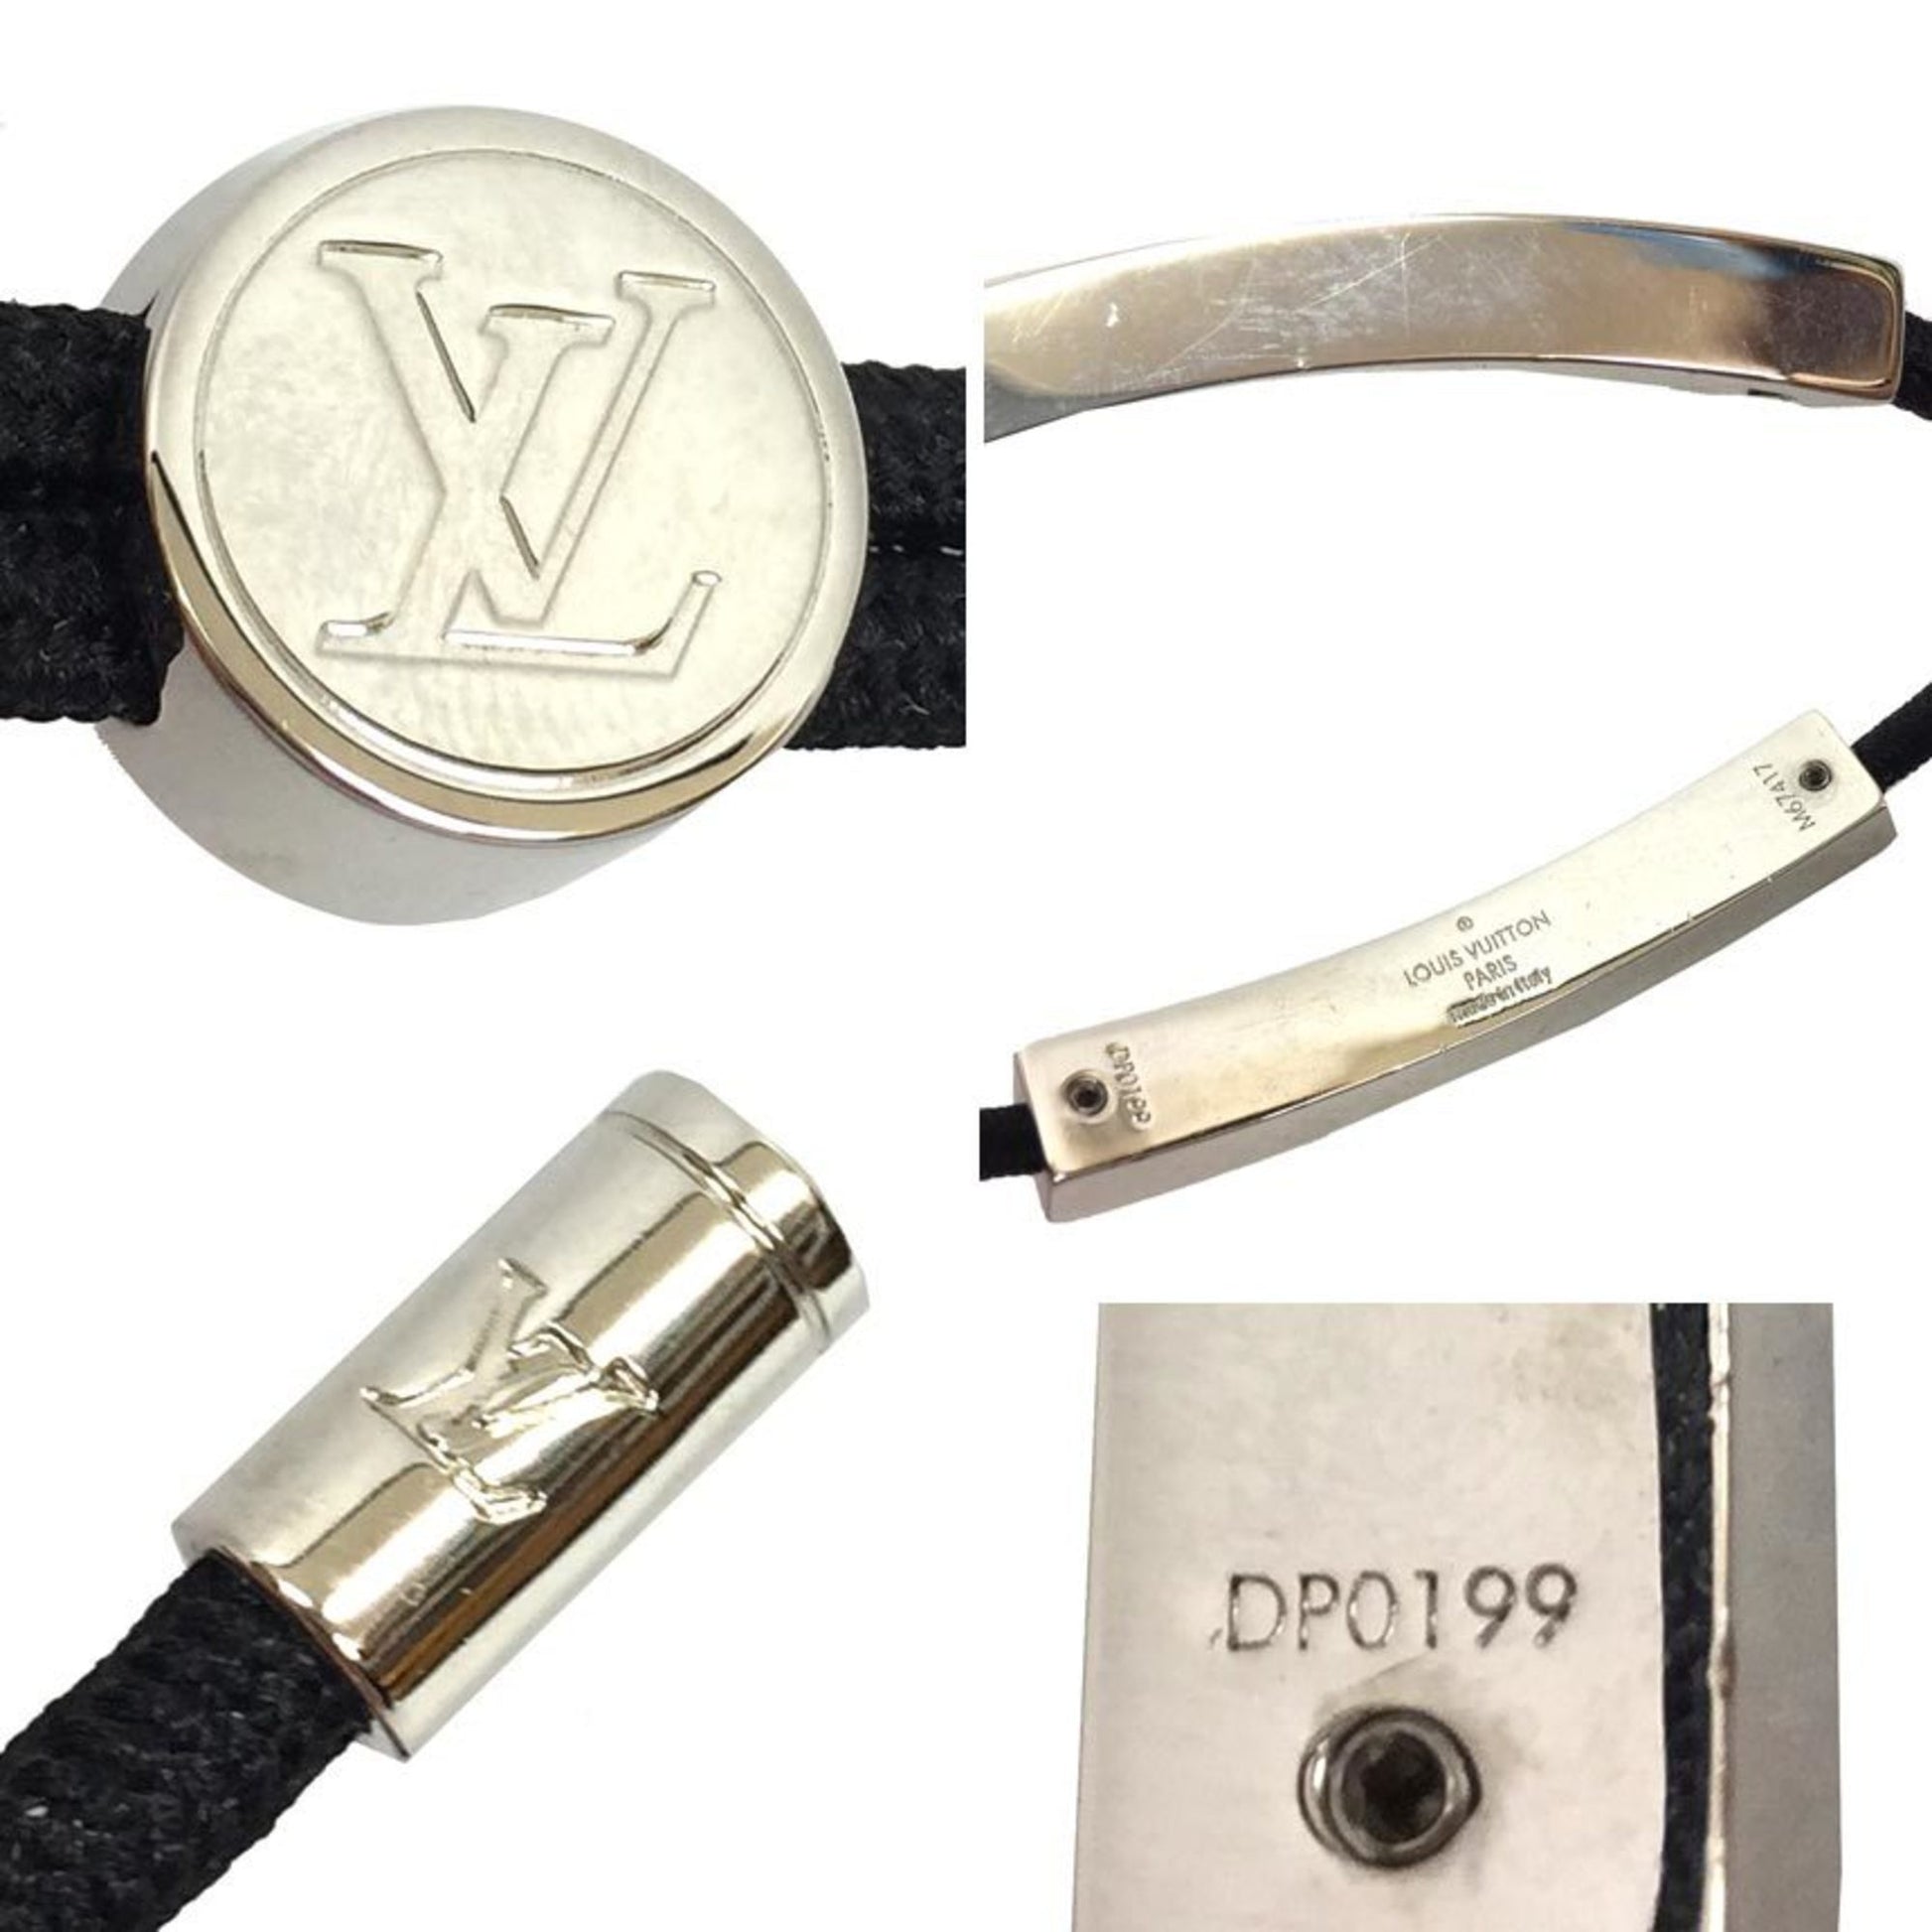 LOUIS VUITTON brasserie heart fall love LV logo bracelet 7.8 inch